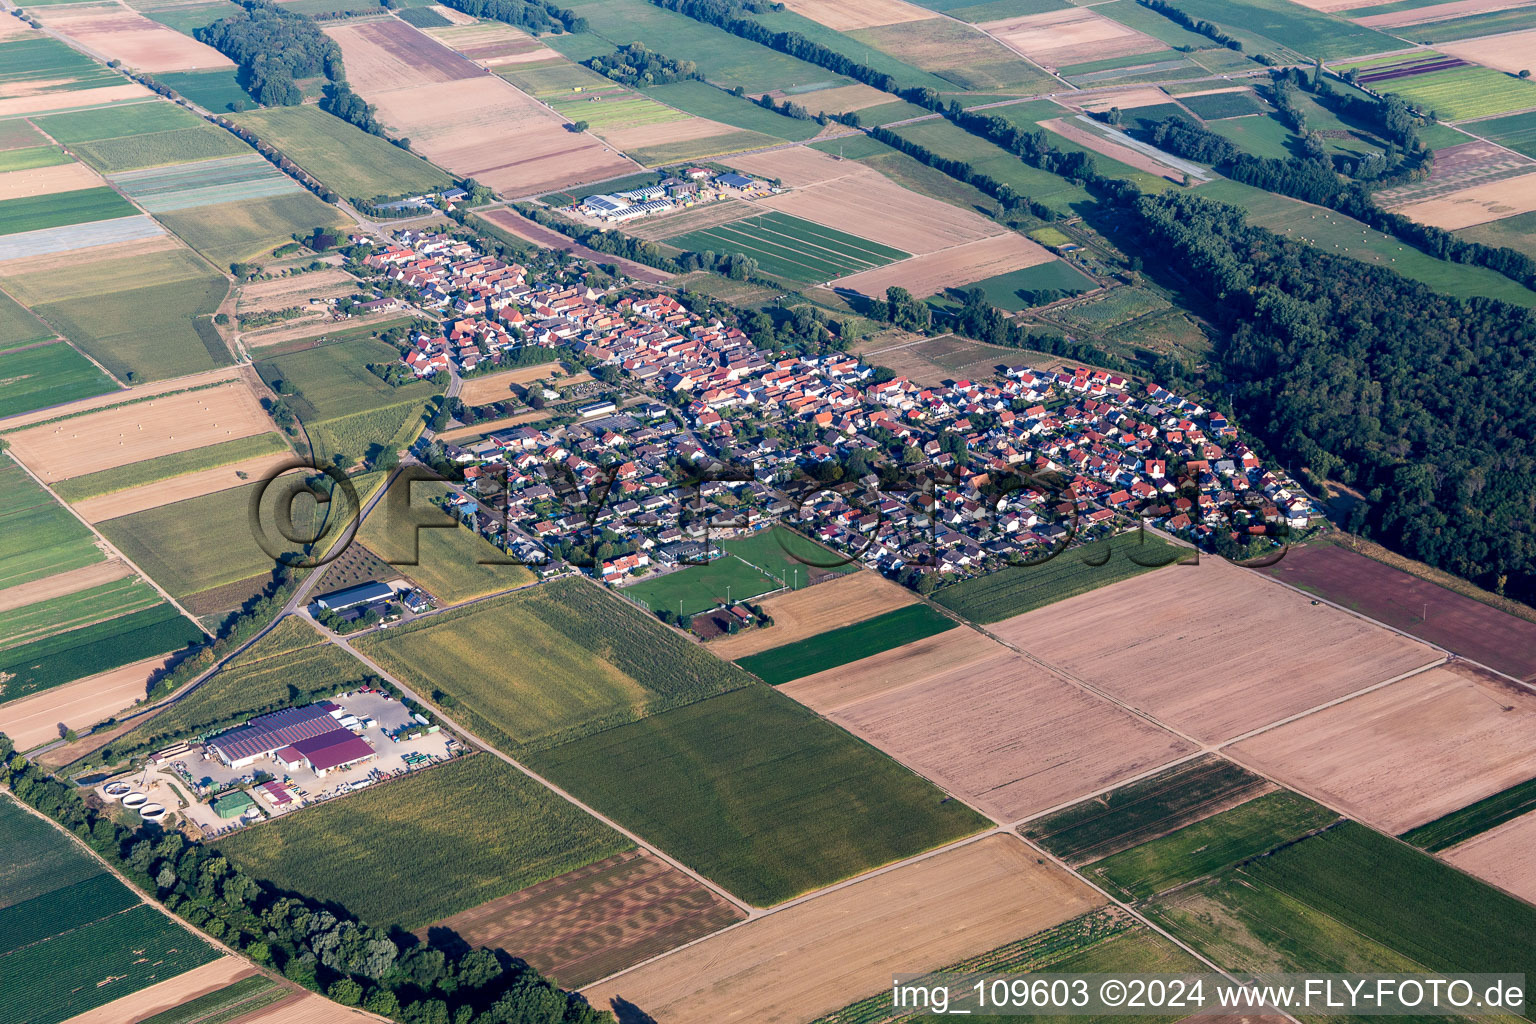 Luftbild von Dorf - Ansicht am Rande von landwirtschaftlichen Feldern und Nutzflächen in Freisbach im Bundesland Rheinland-Pfalz, Deutschland